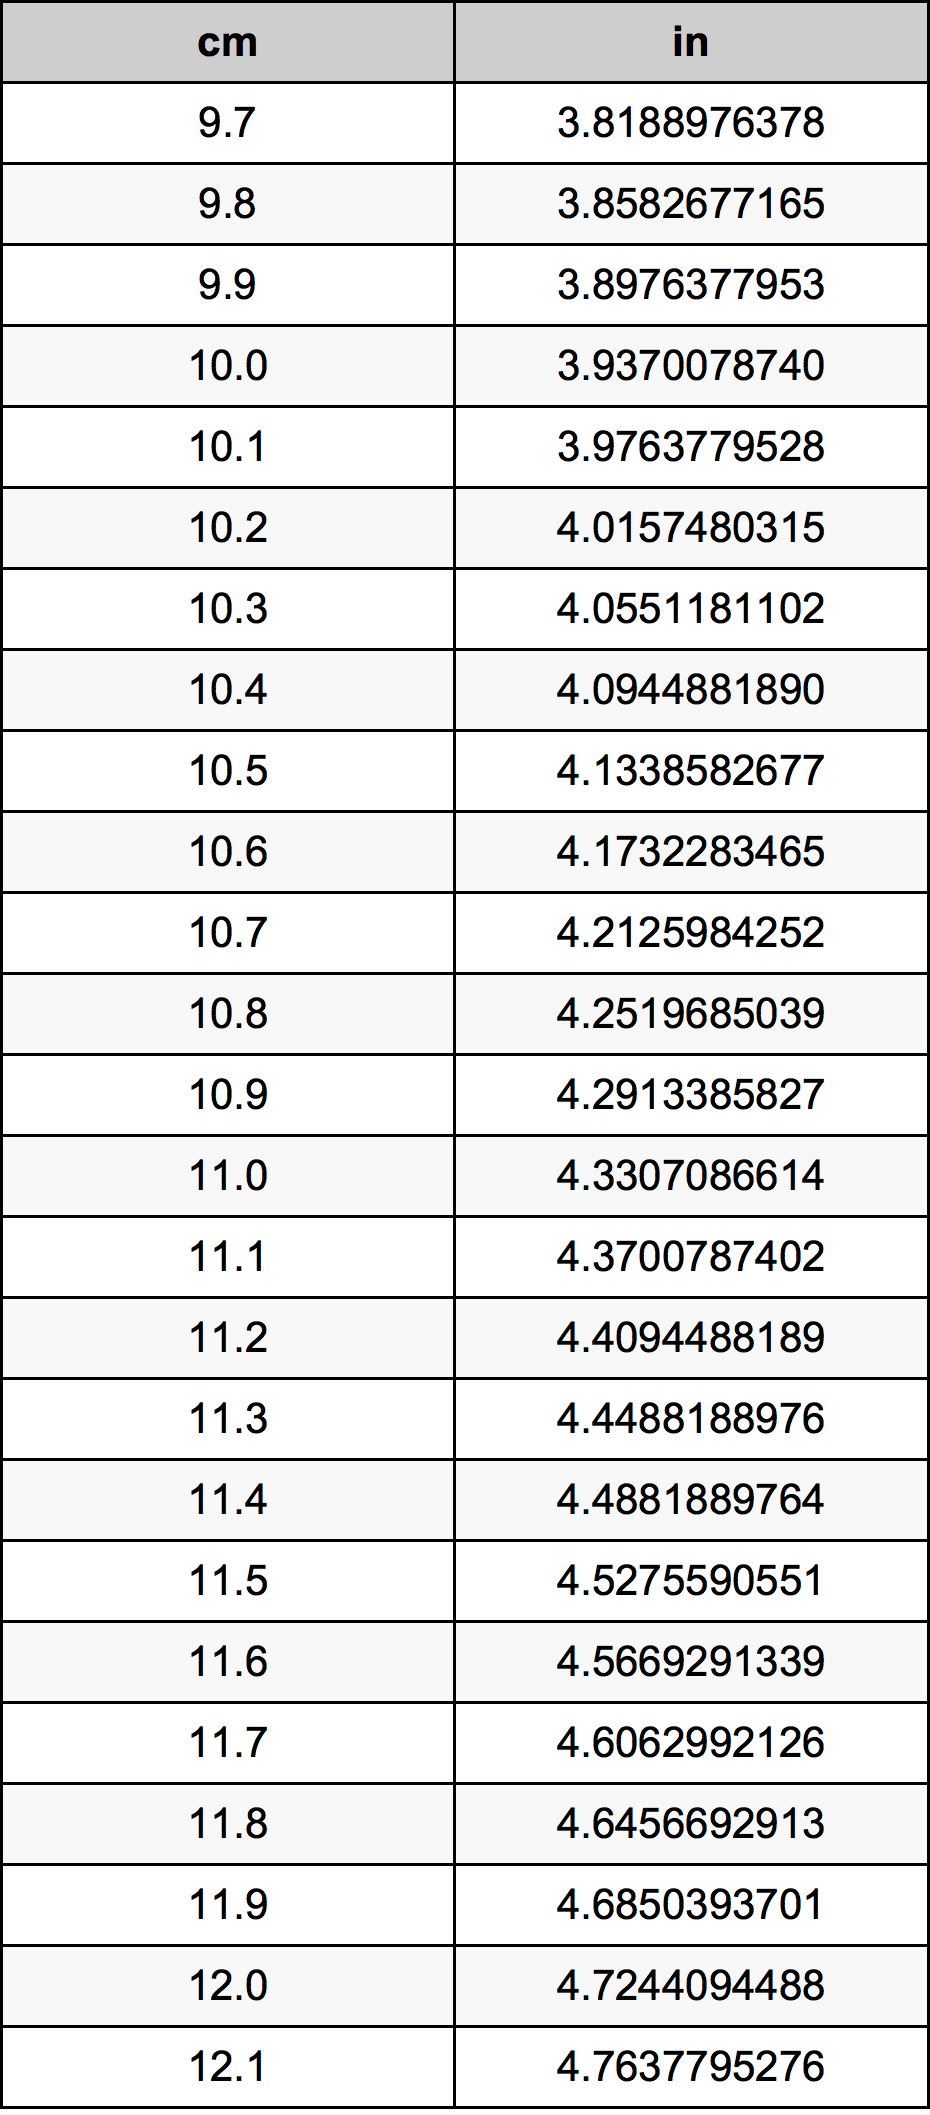 10.9 Centiméter átszámítási táblázat